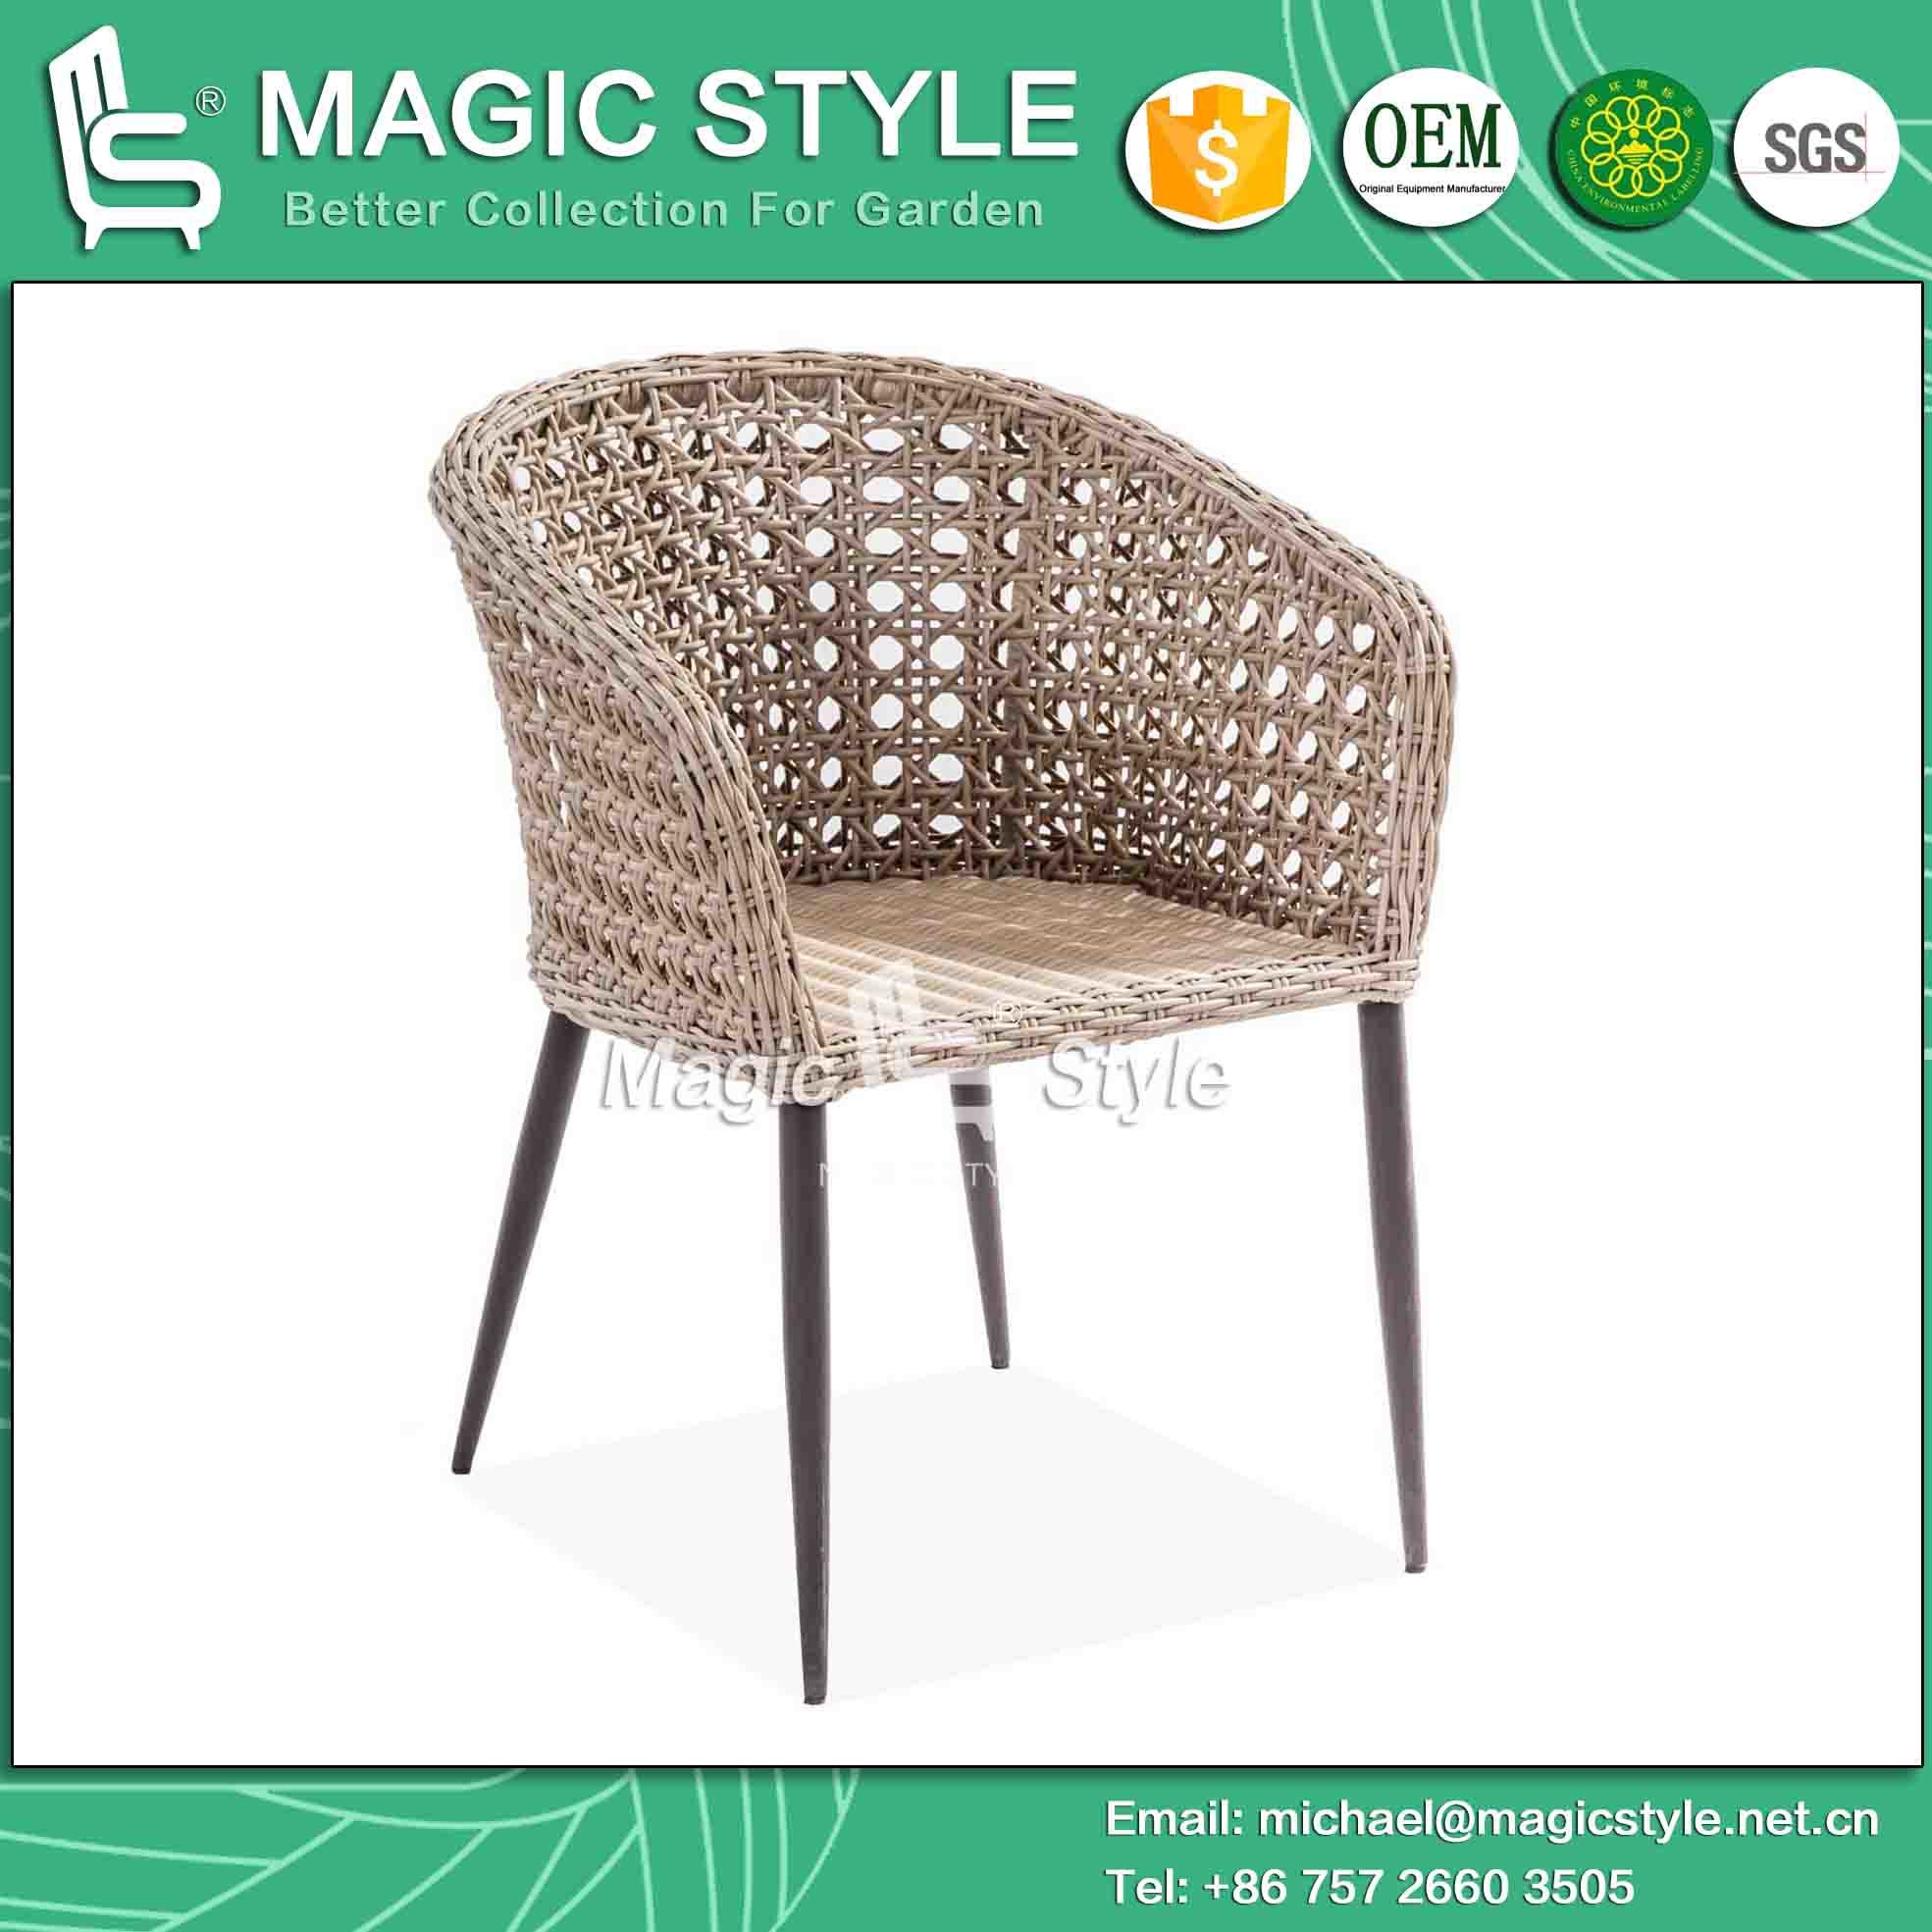 Patio Chair New Design Chair Coffee Chair Rattan Chair Wicker Chair High Quality Chair (Magic Style)